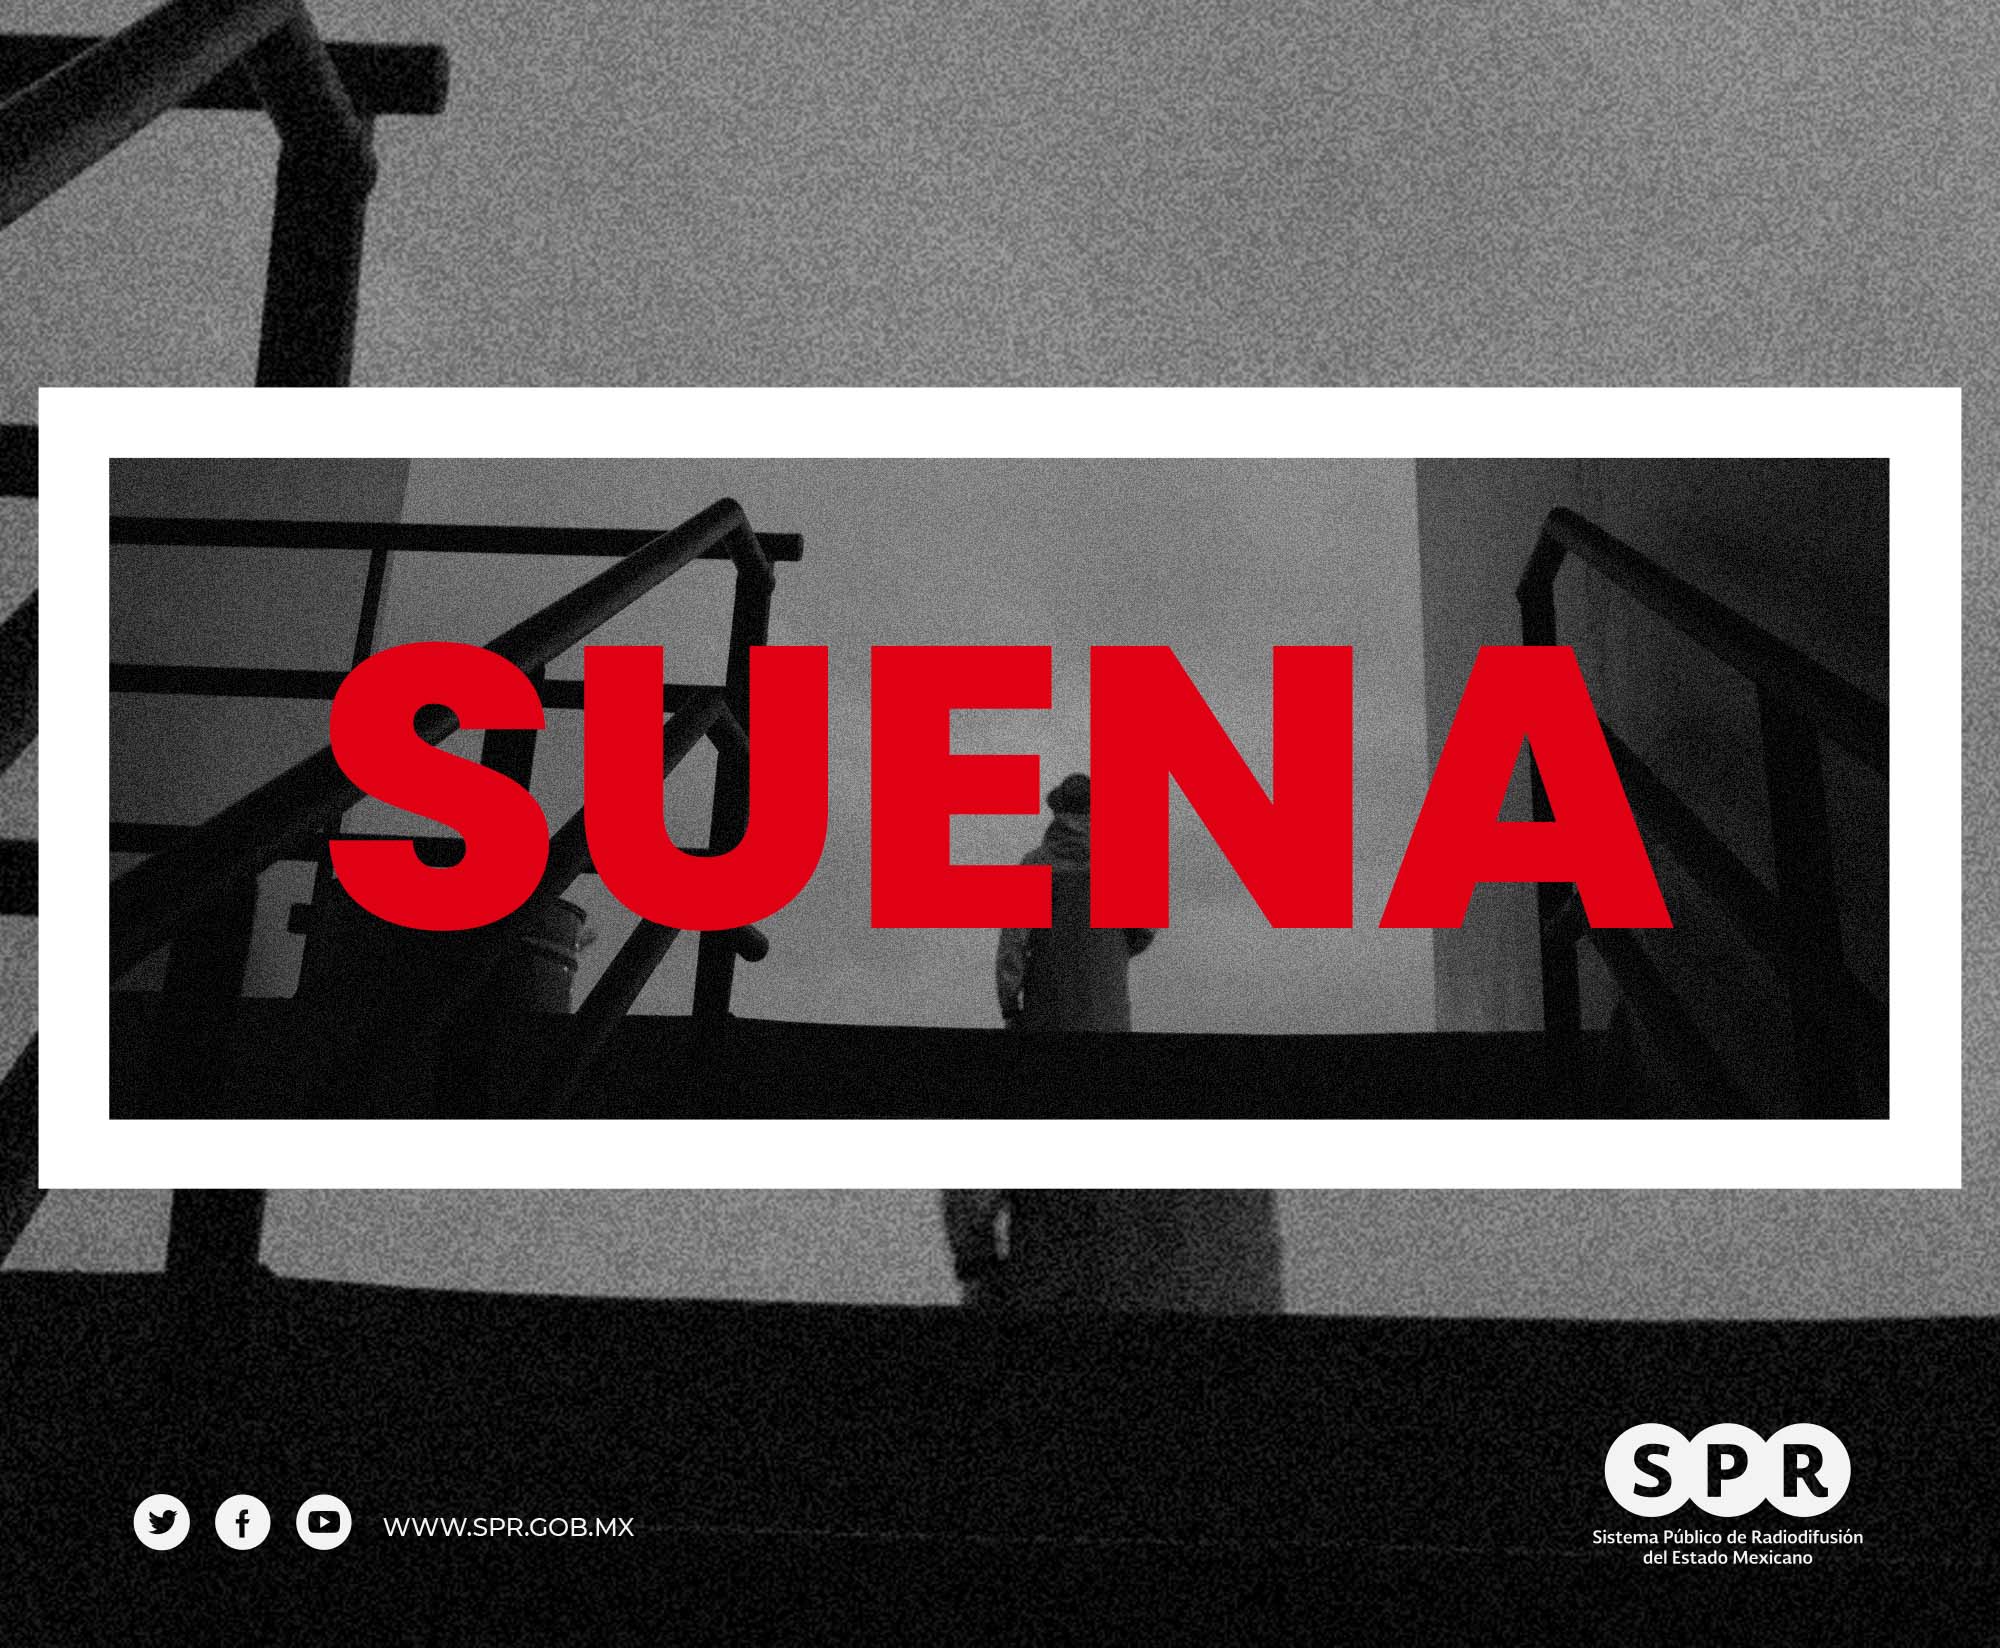 Canal Catorce del SPR estrena el viernes 31 de marzo la serie “Suena”